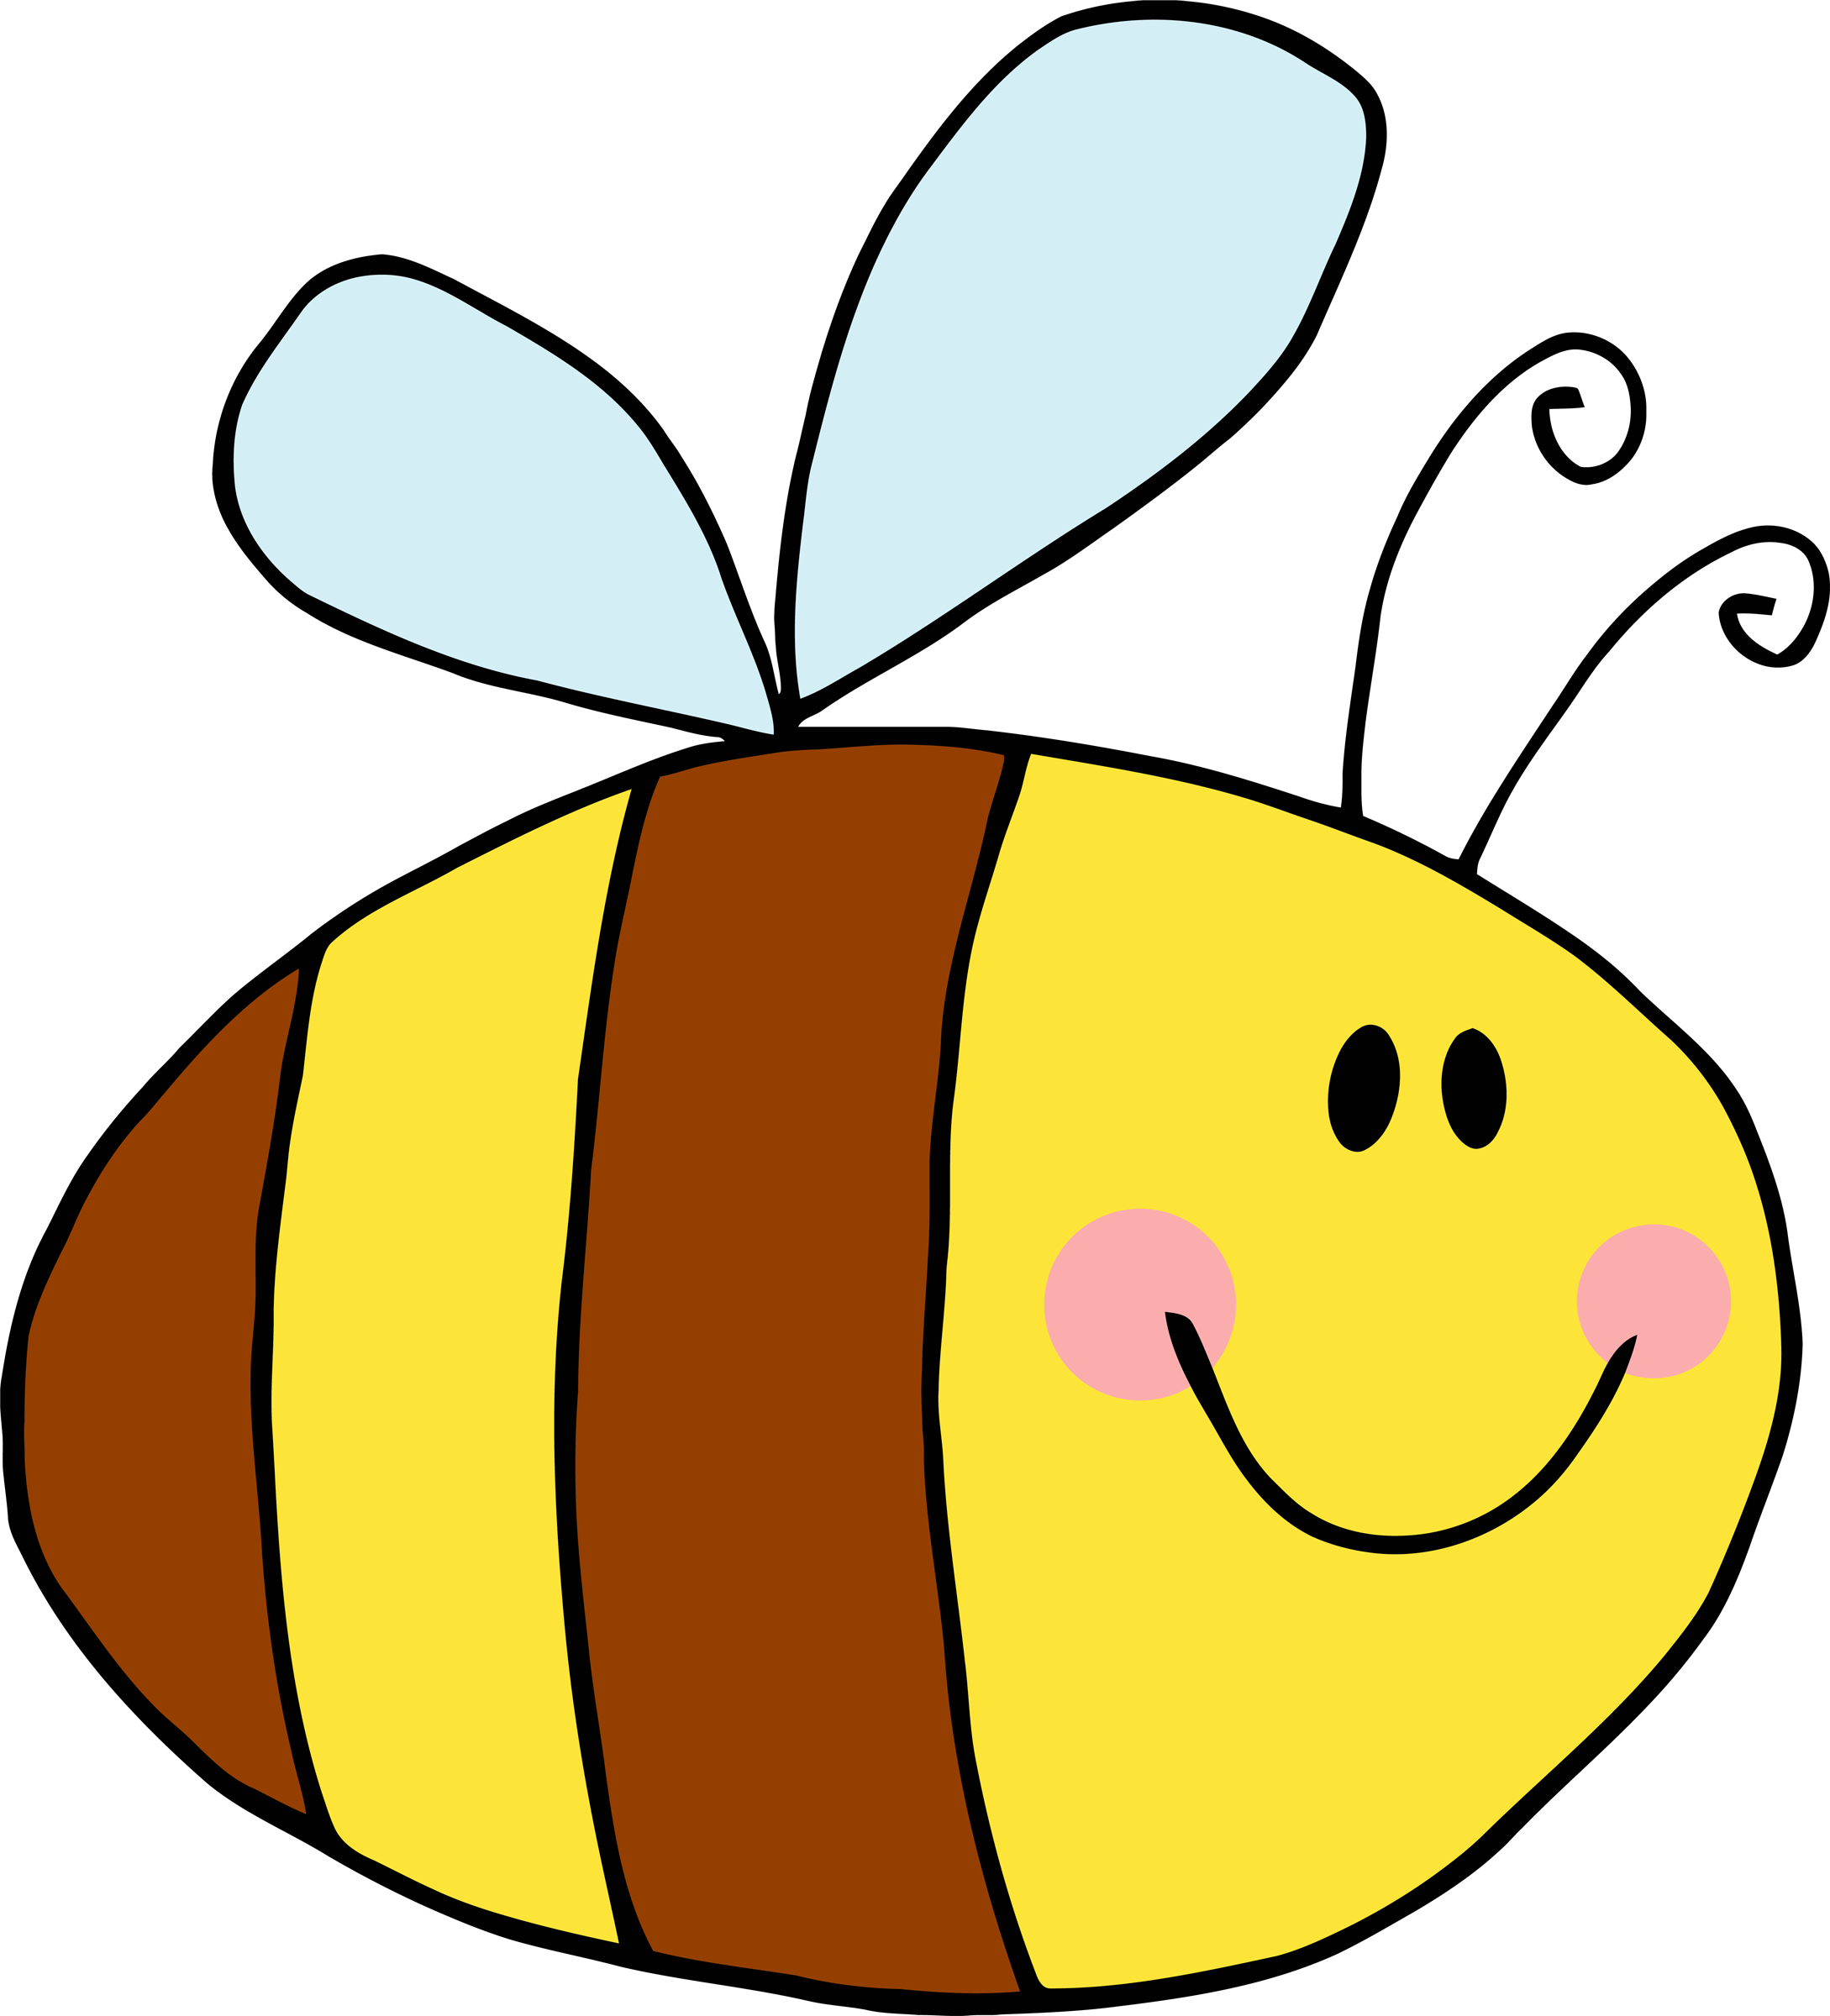 Cartoon Bees PNG HD - 121844